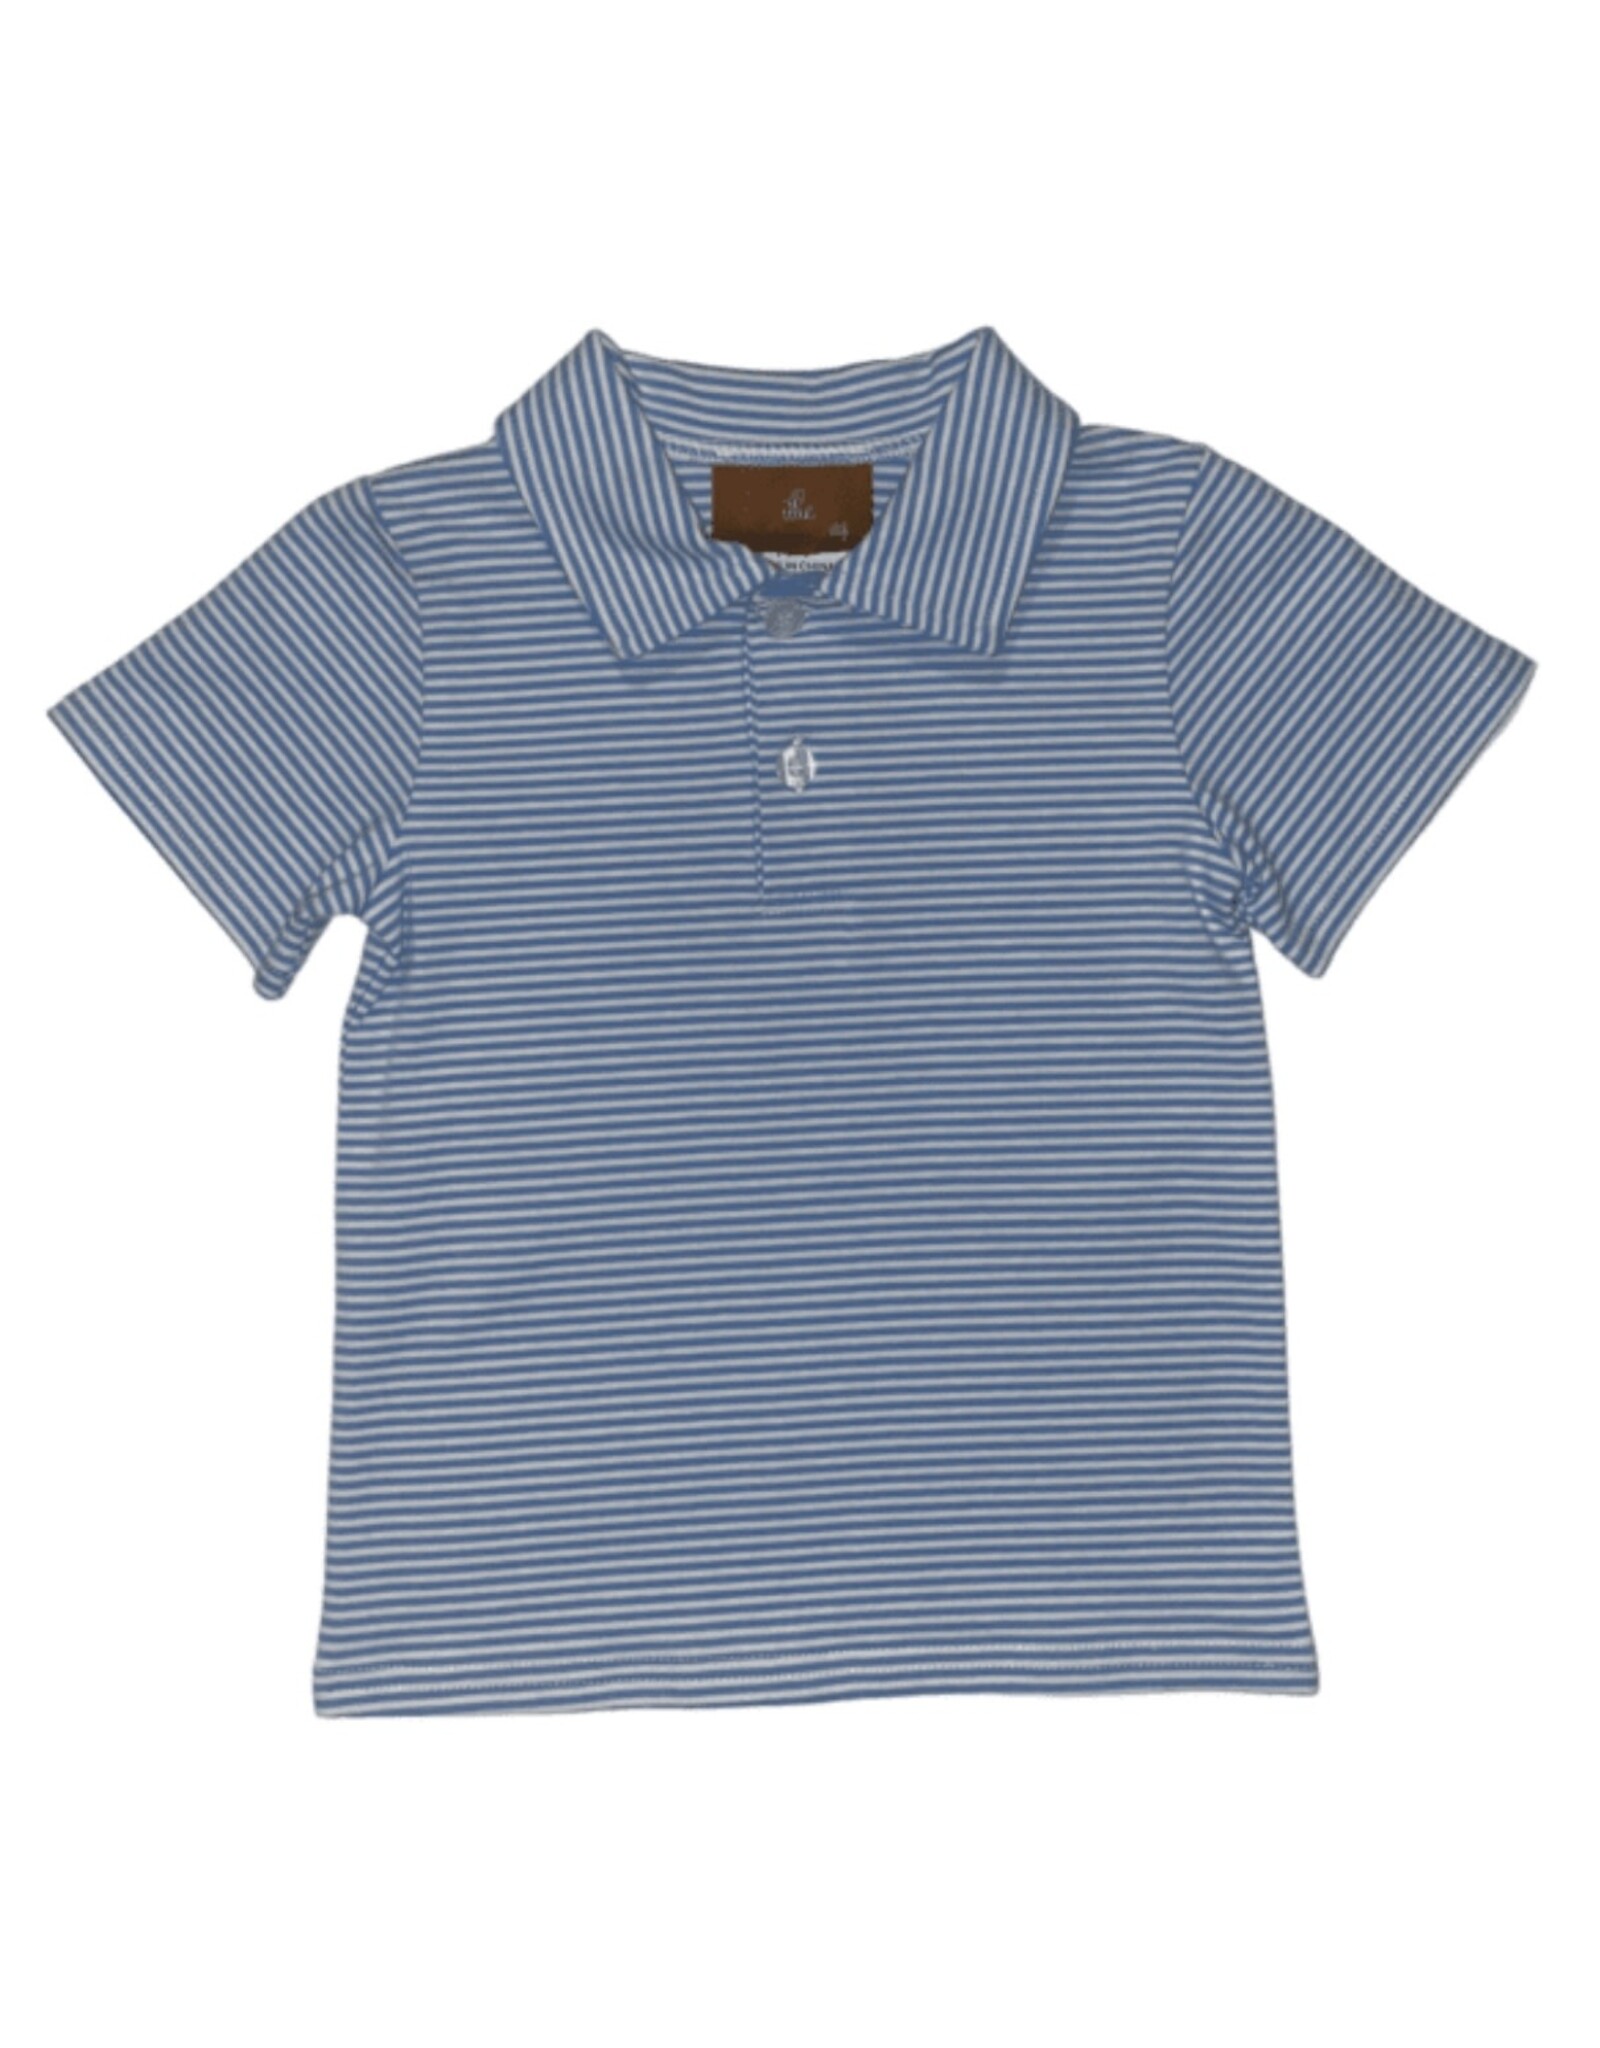 Millie Jay Millie Jay- Bennett Shirt: Steel Blue Stripe